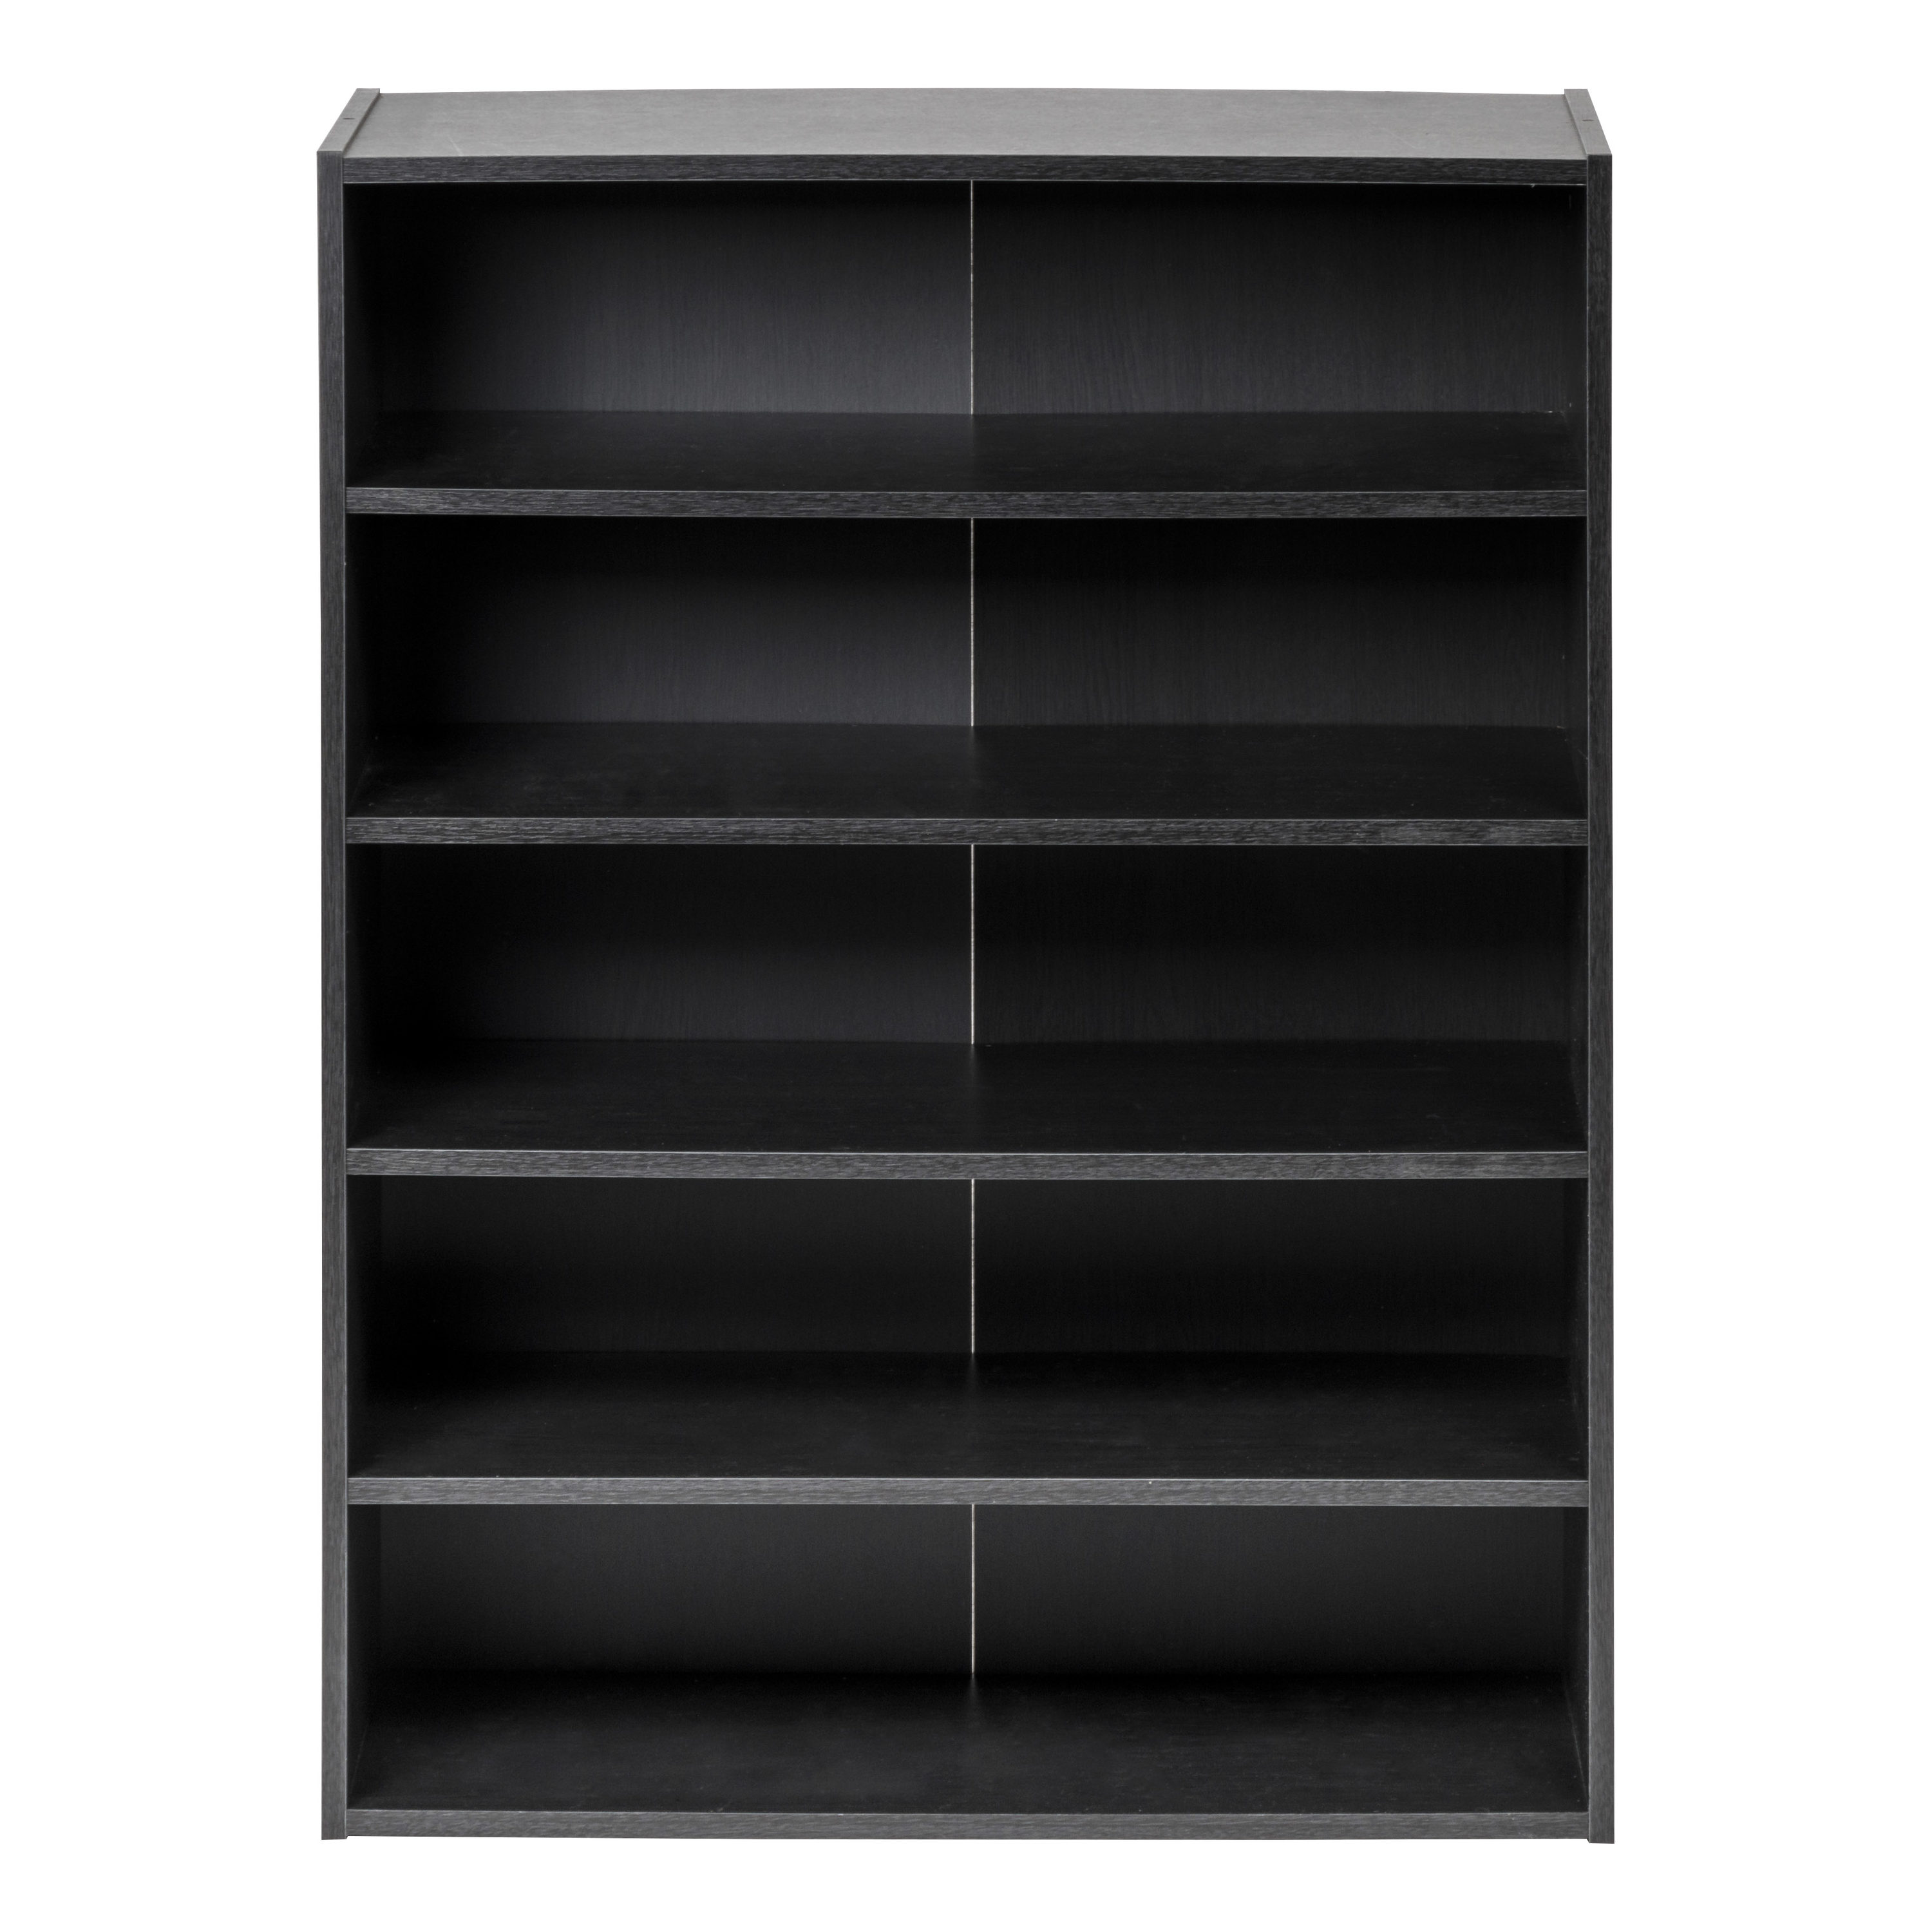 Iris USA 5-Tier Multi-Purpose Organizer Shelf, Black